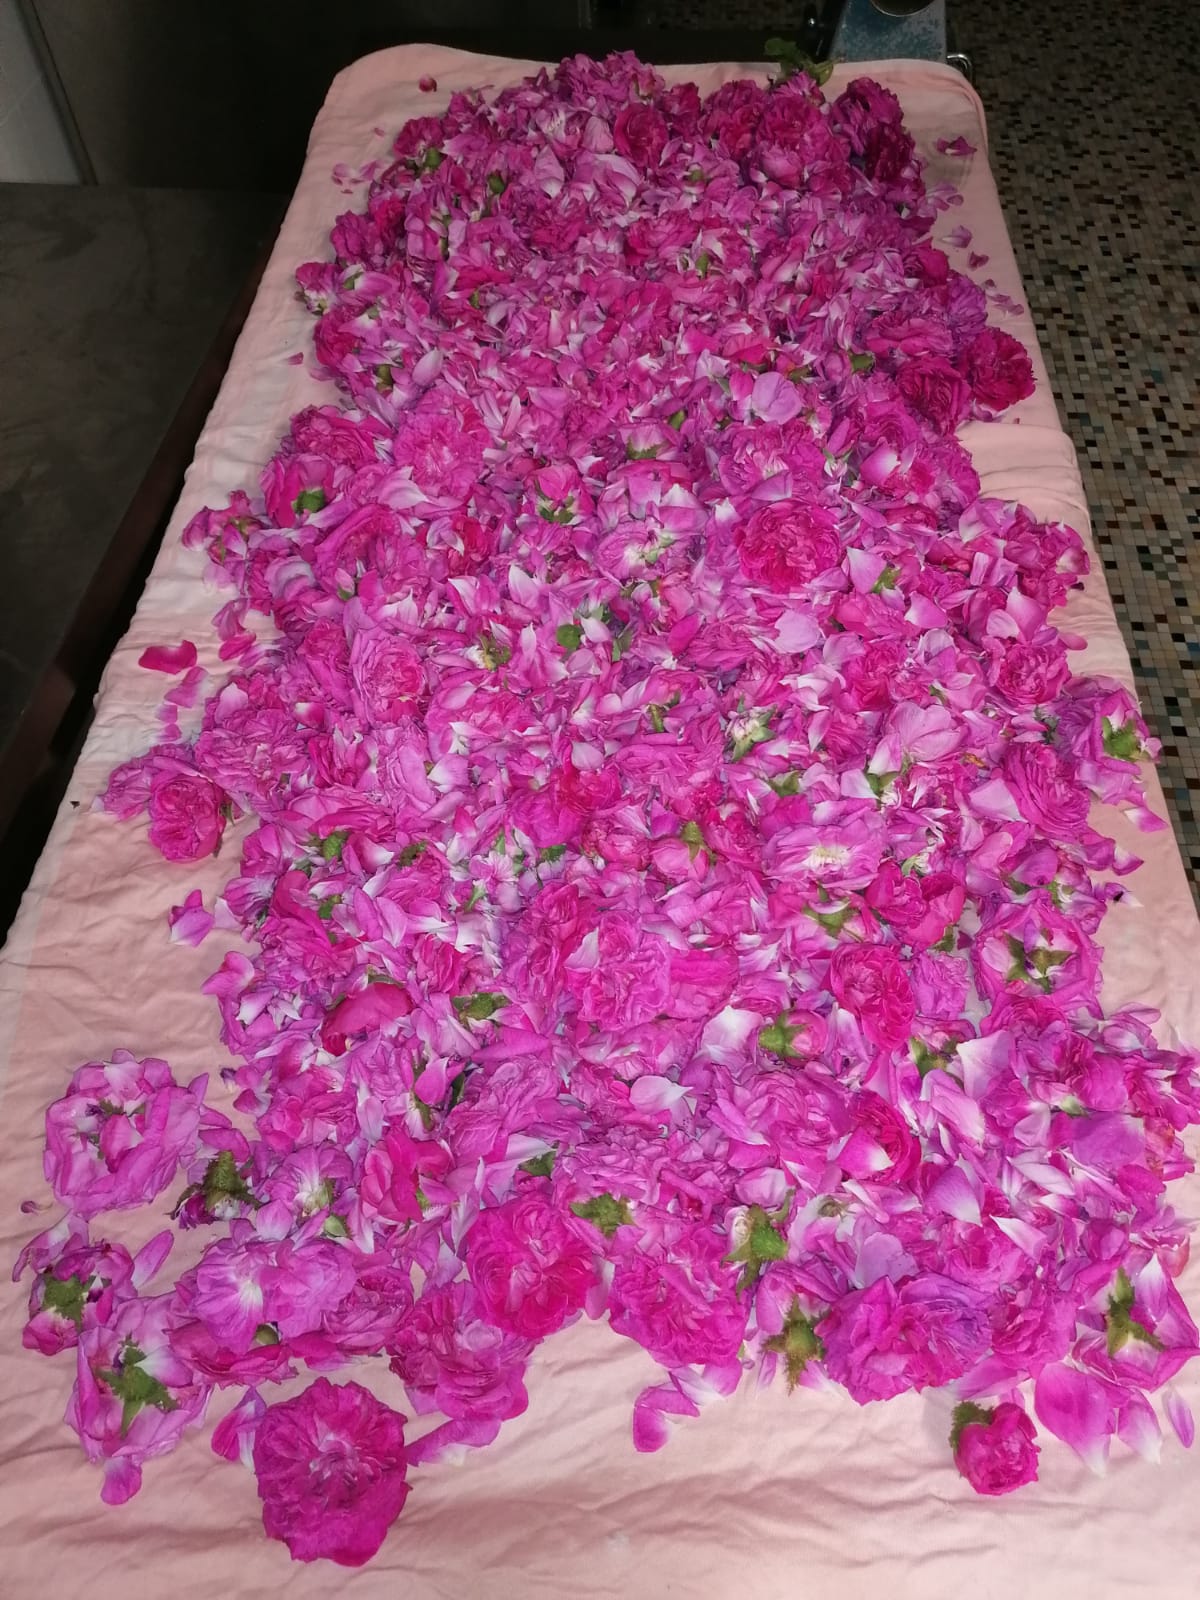 rose petals getting dry